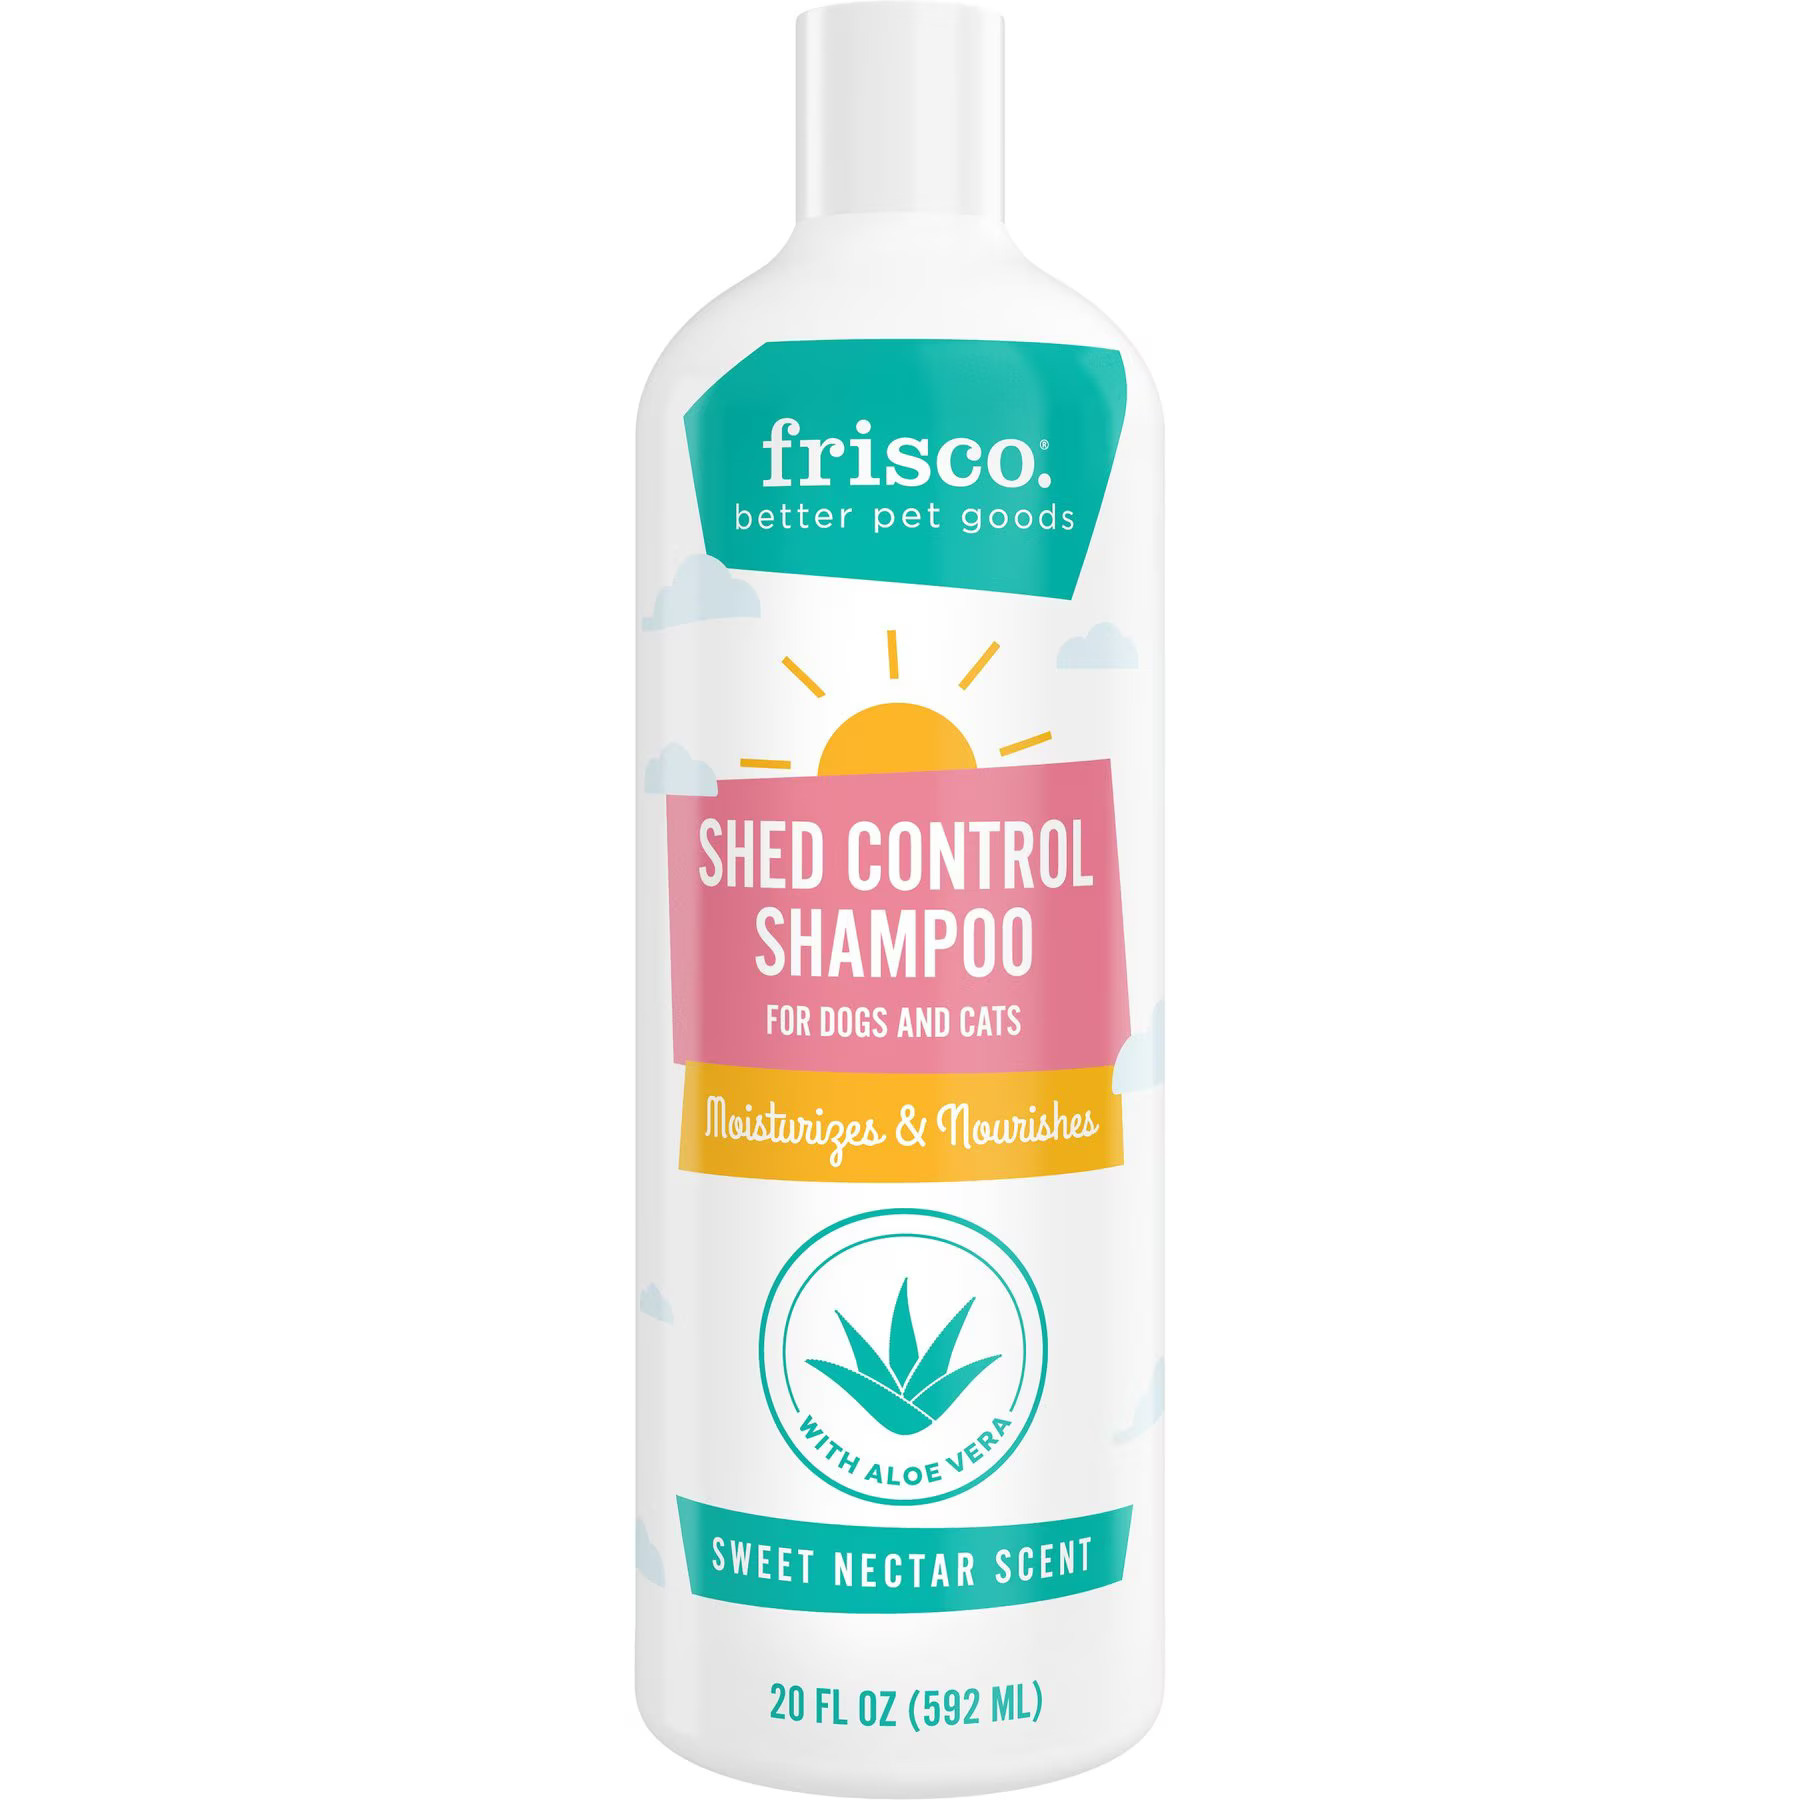 Frisco Shed Control Shampoo with Aloe